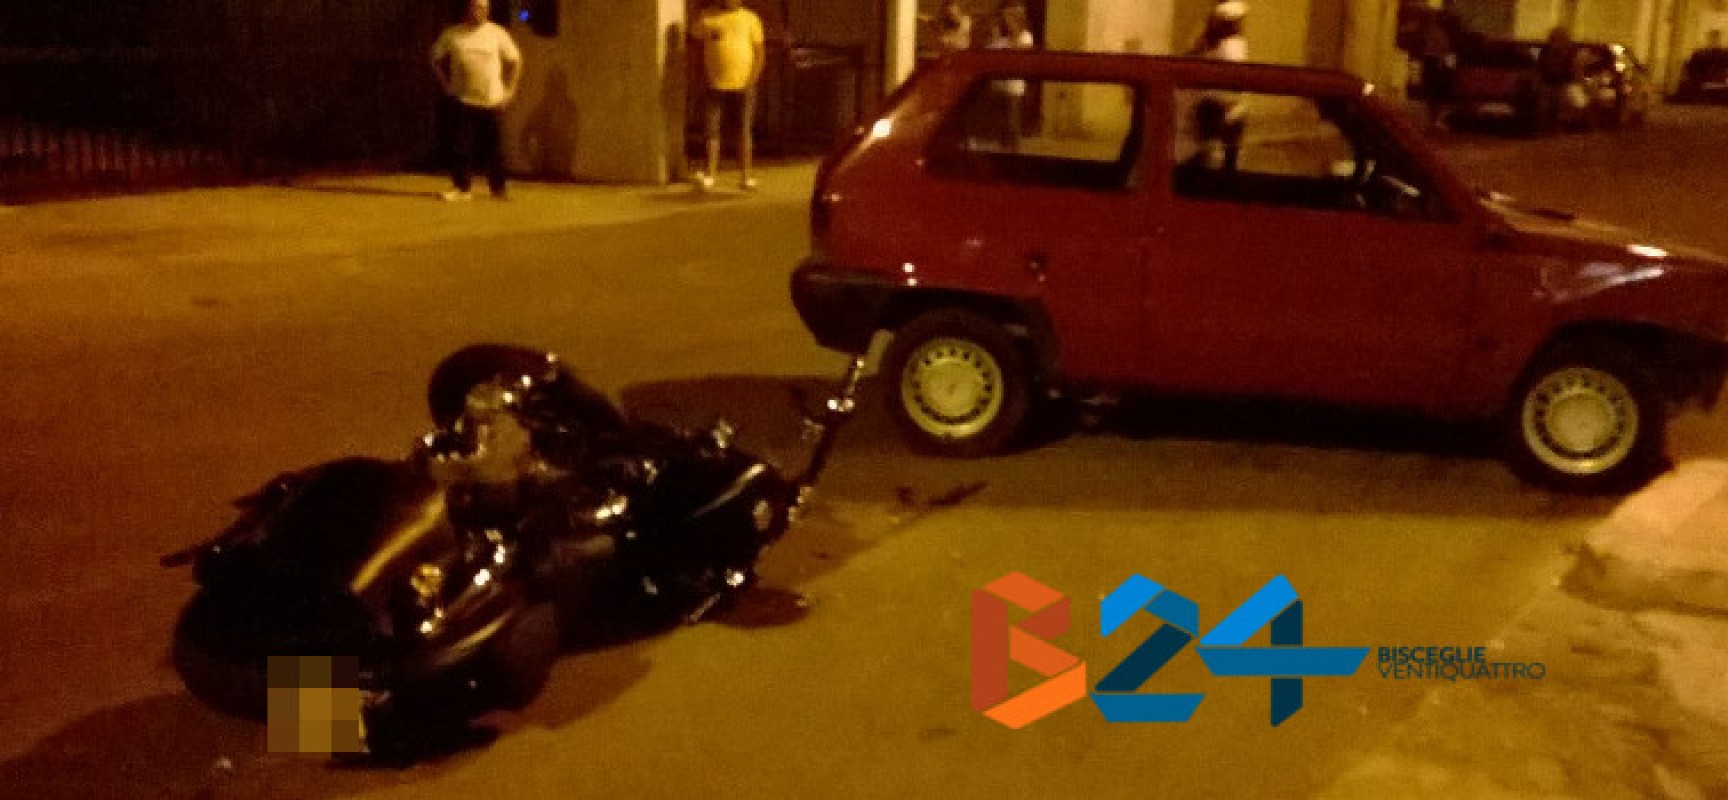 Incidente tra auto e moto in via Fragata, motociclista finisce in ospedale